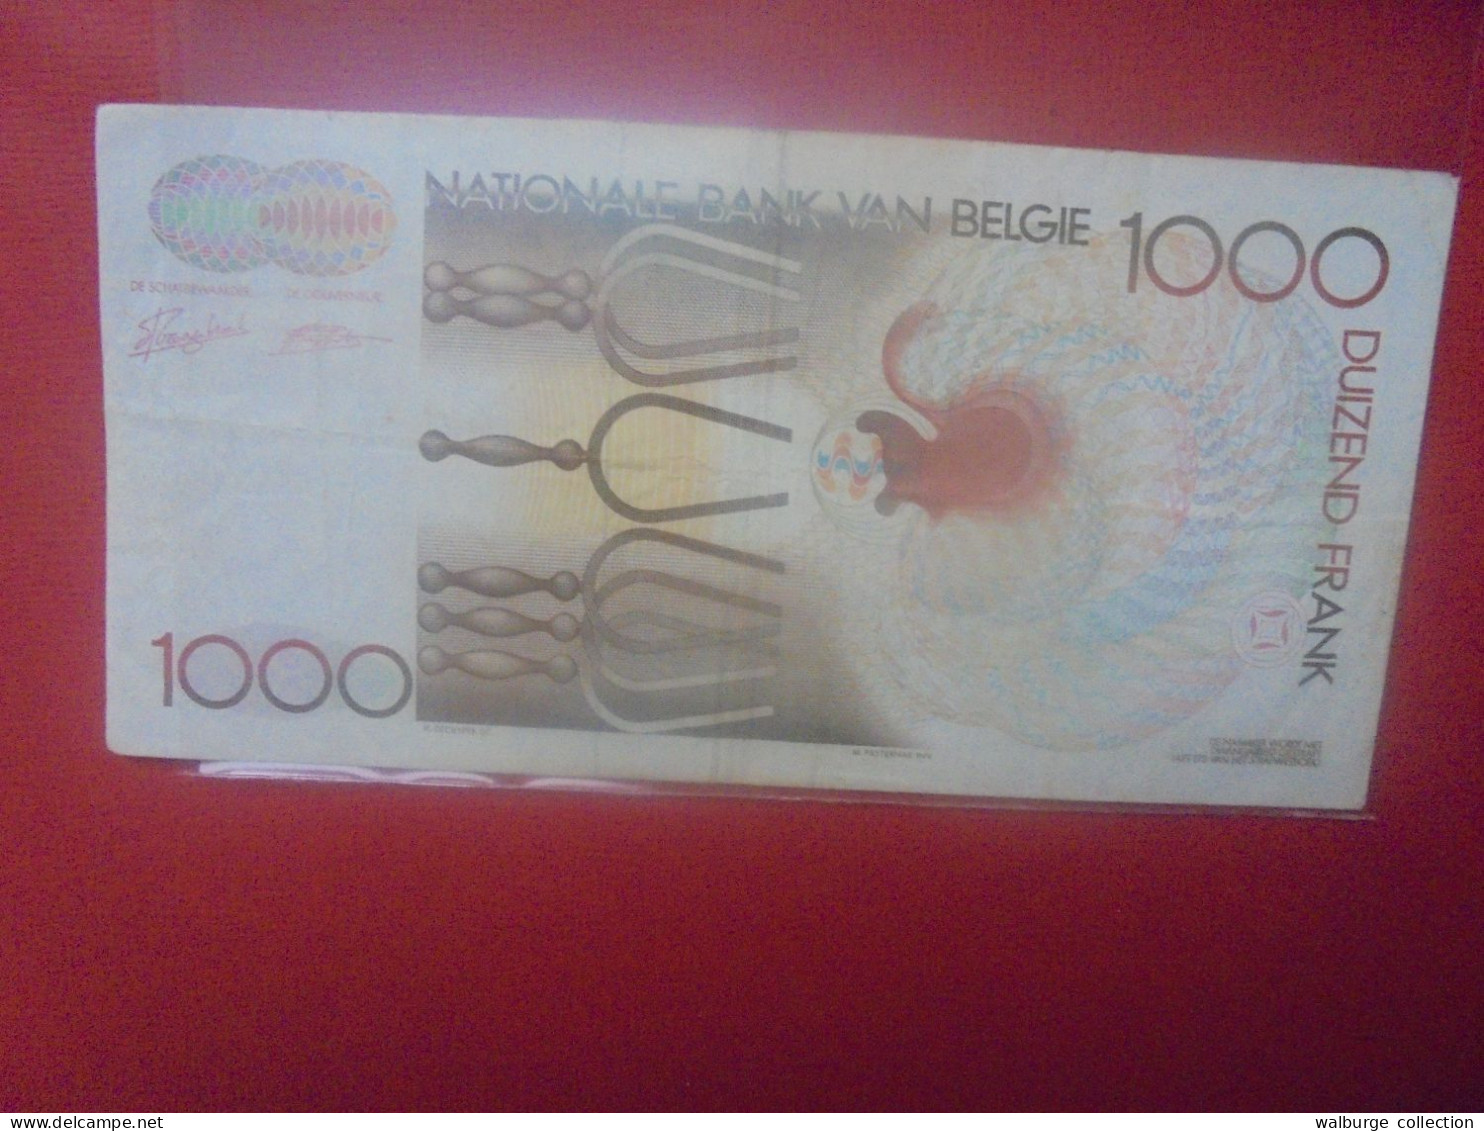 BELGIQUE 1000 Francs 1981-1997 Circuler (B.31) - 1000 Francos